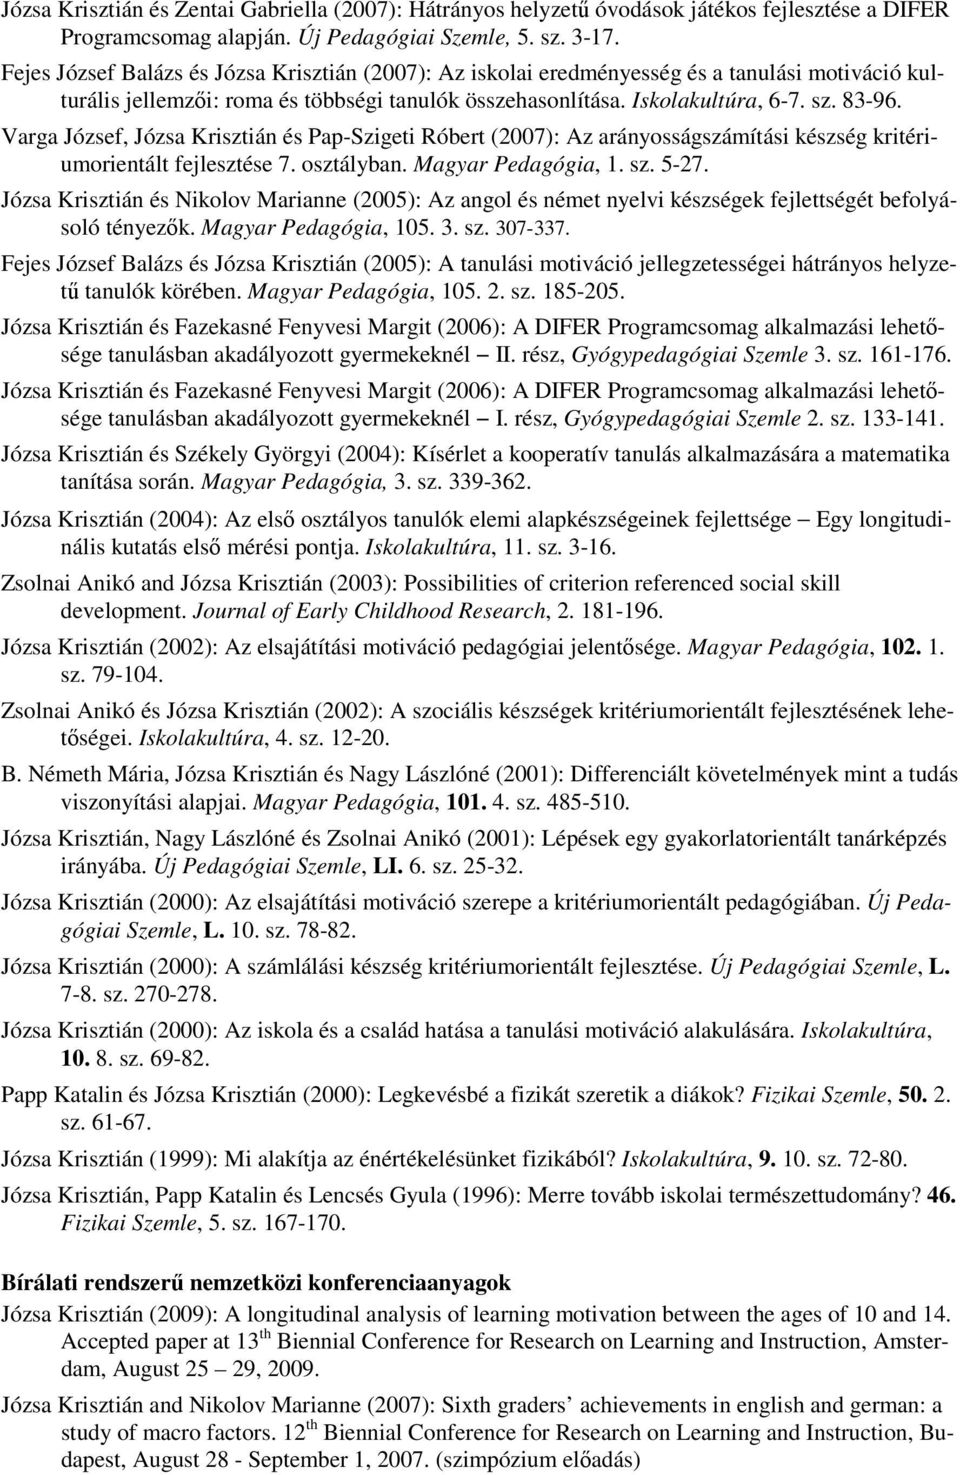 Varga József, Józsa Krisztián és Pap-Szigeti Róbert (2007): Az arányosságszámítási készség kritériumorientált fejlesztése 7. osztályban. Magyar Pedagógia, 1. sz. 5-27.